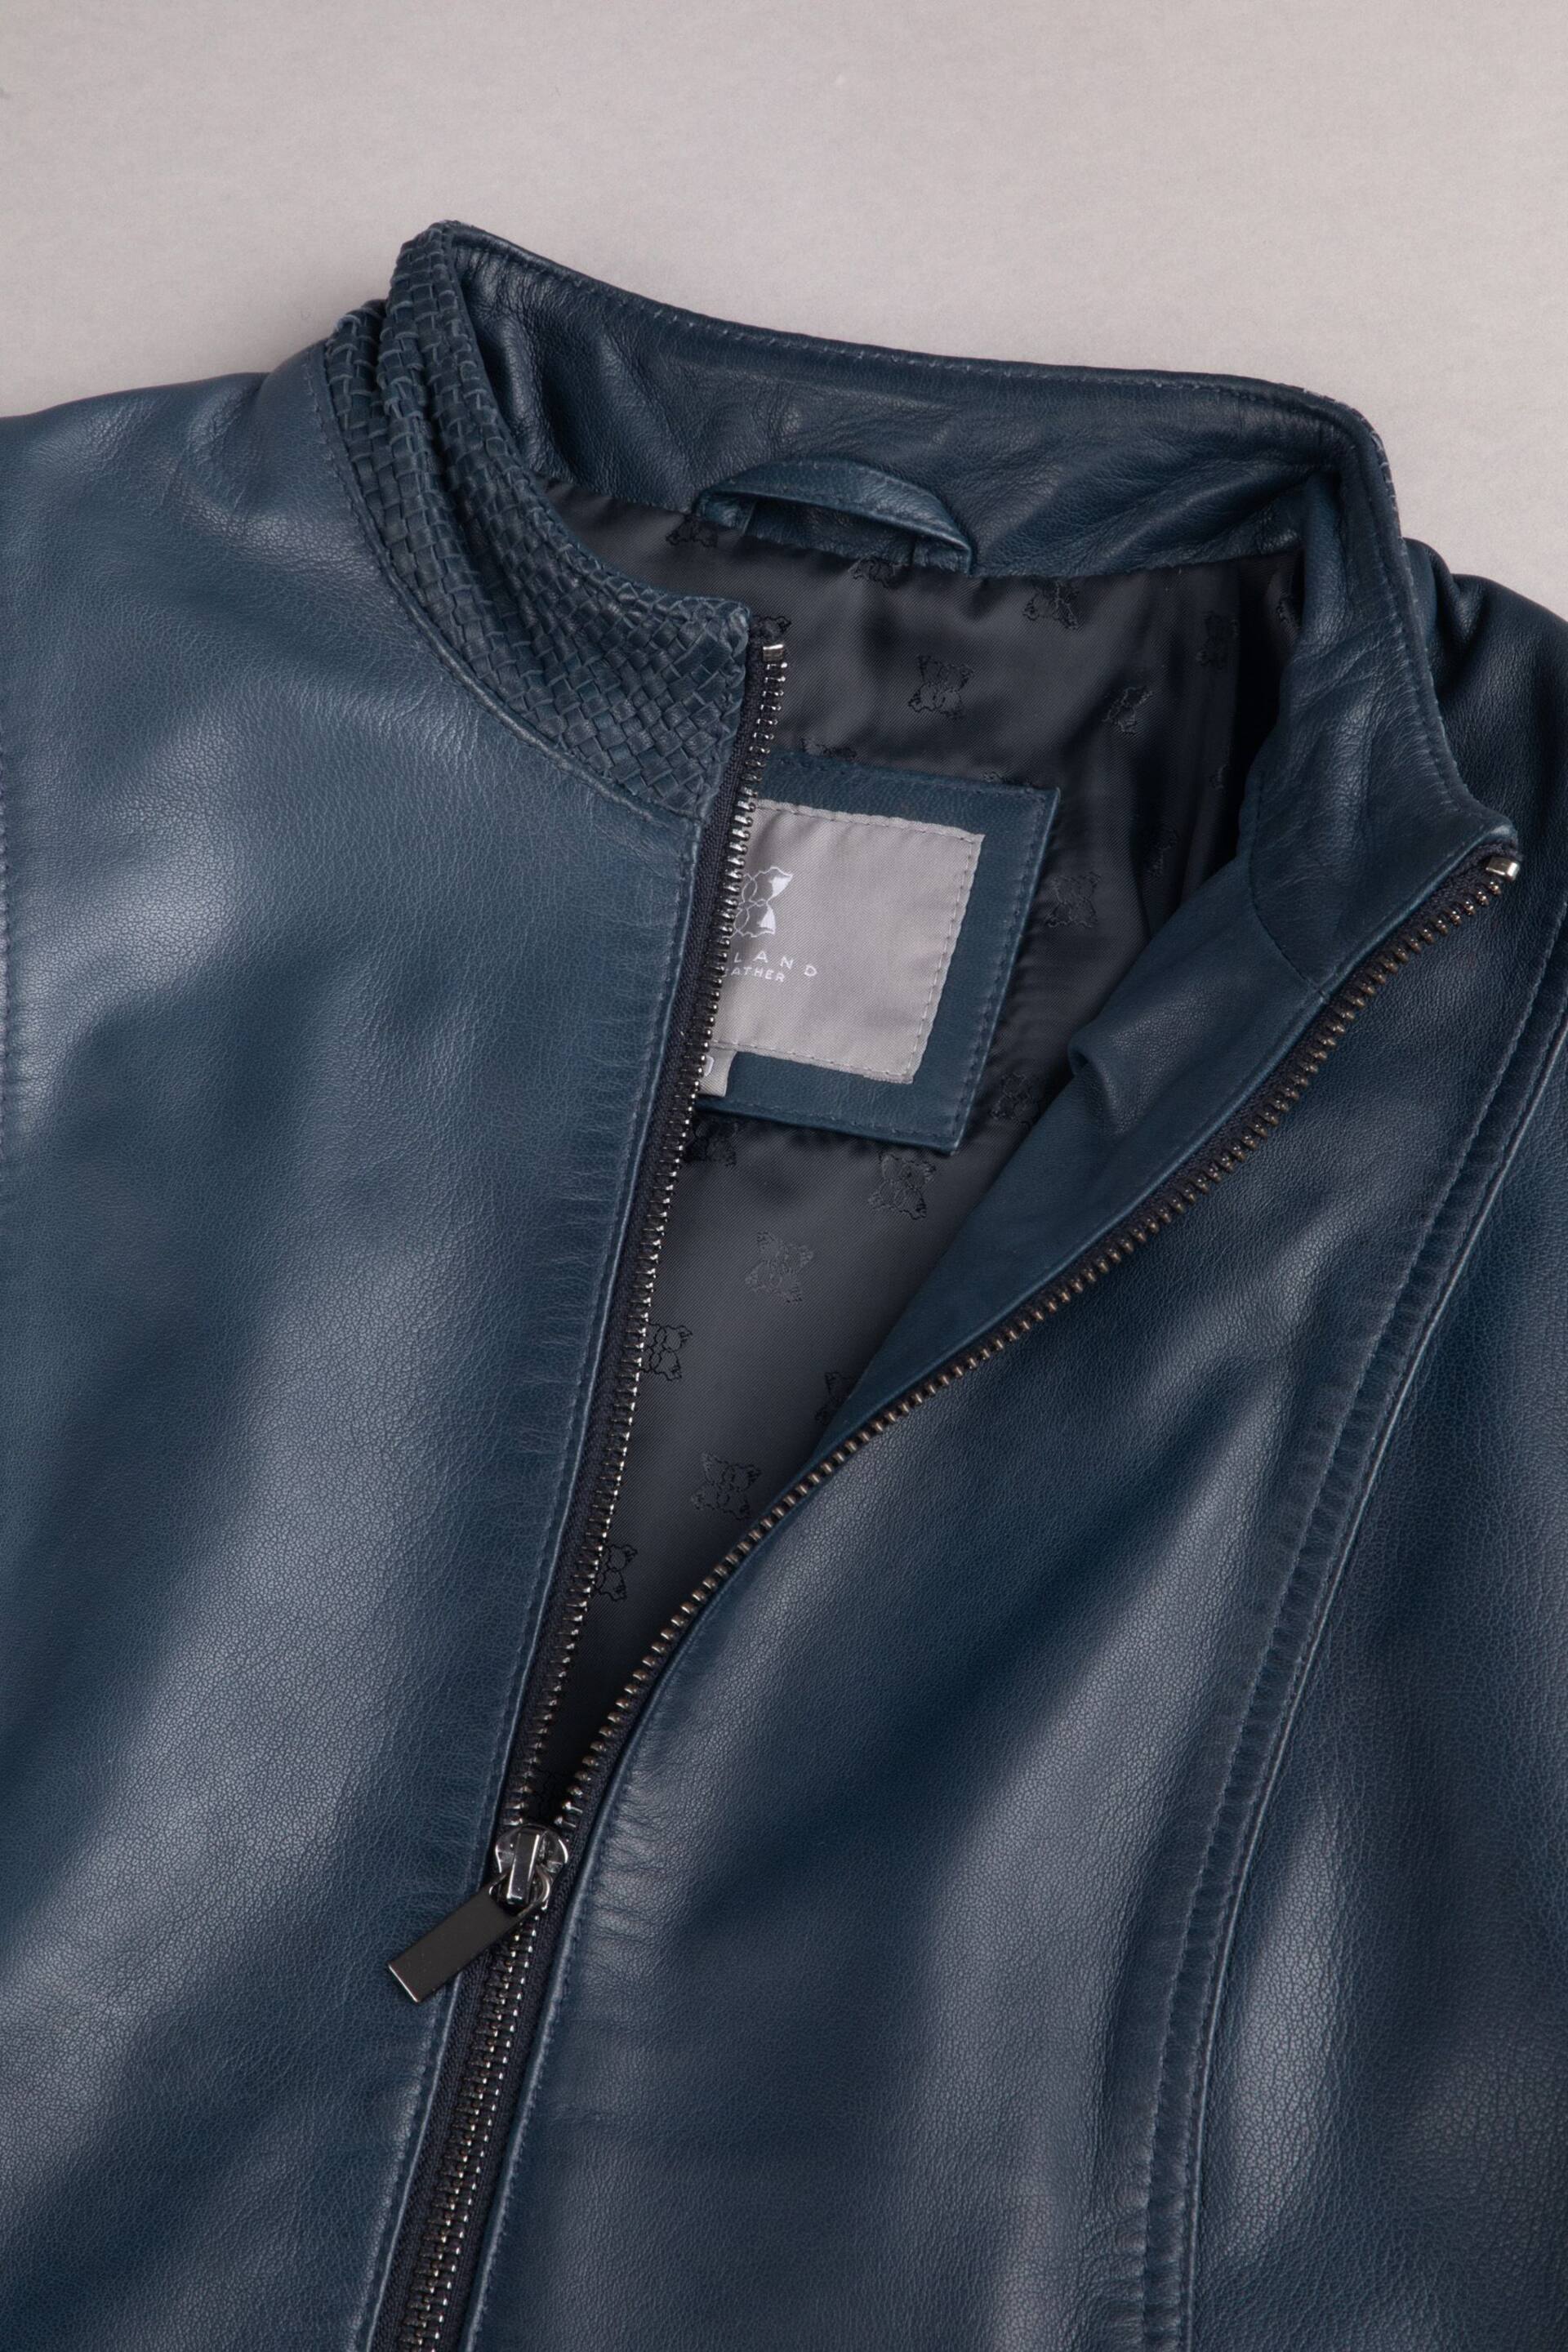 Lakeland Leather Blue Anthorn Leather Jacket - Image 4 of 5